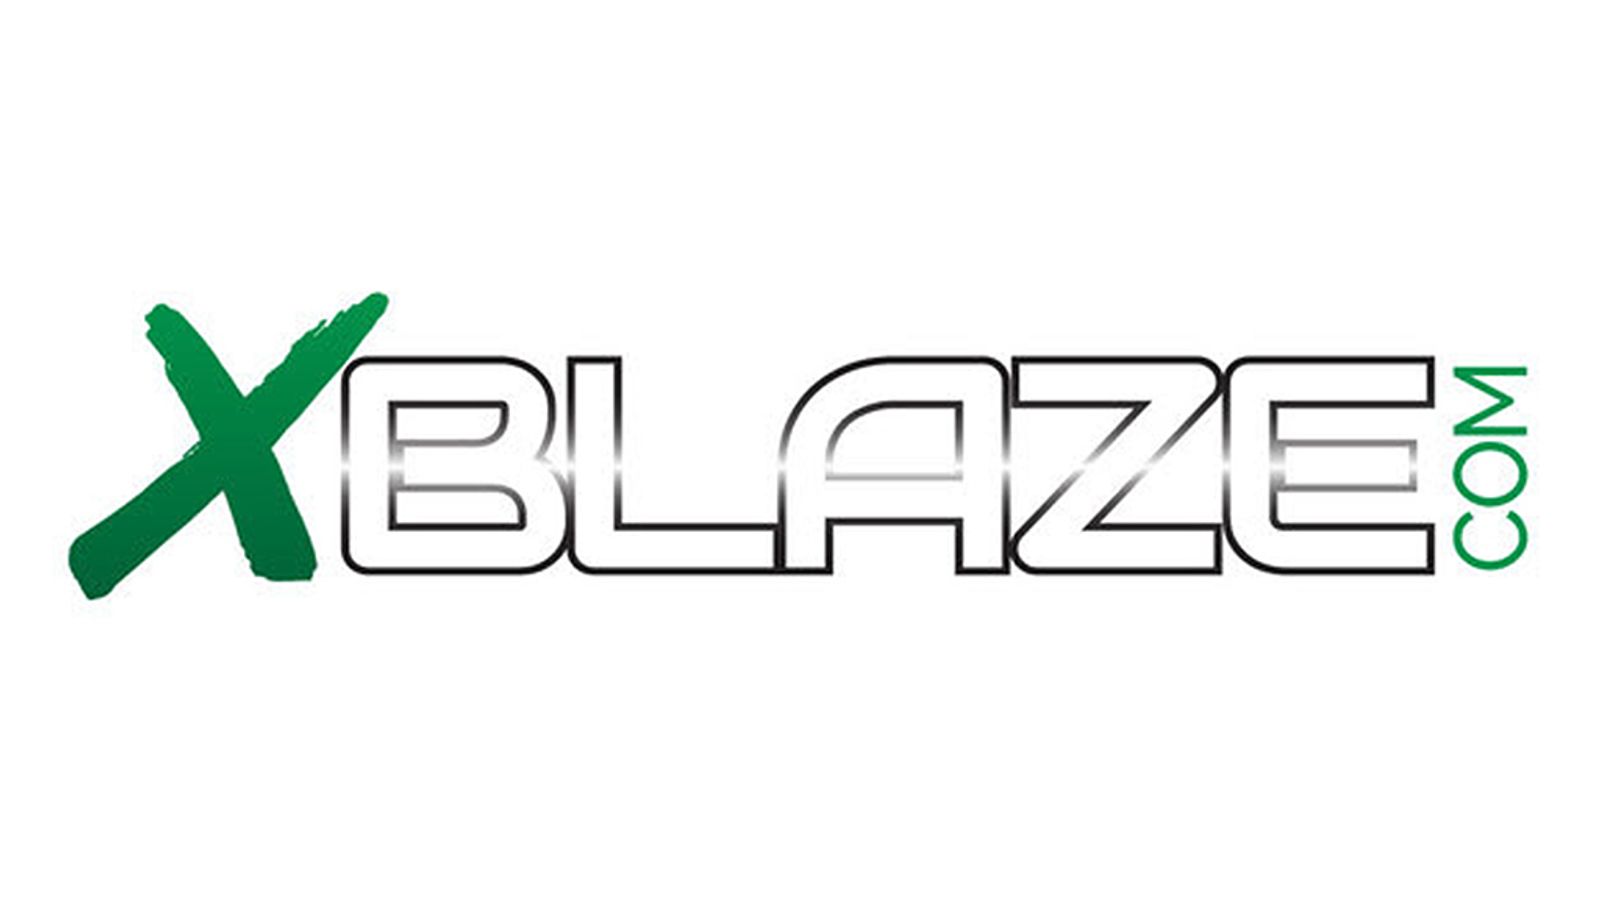 XBlaze Offers Roseanne Barr $150K to Perform in BBW Scene